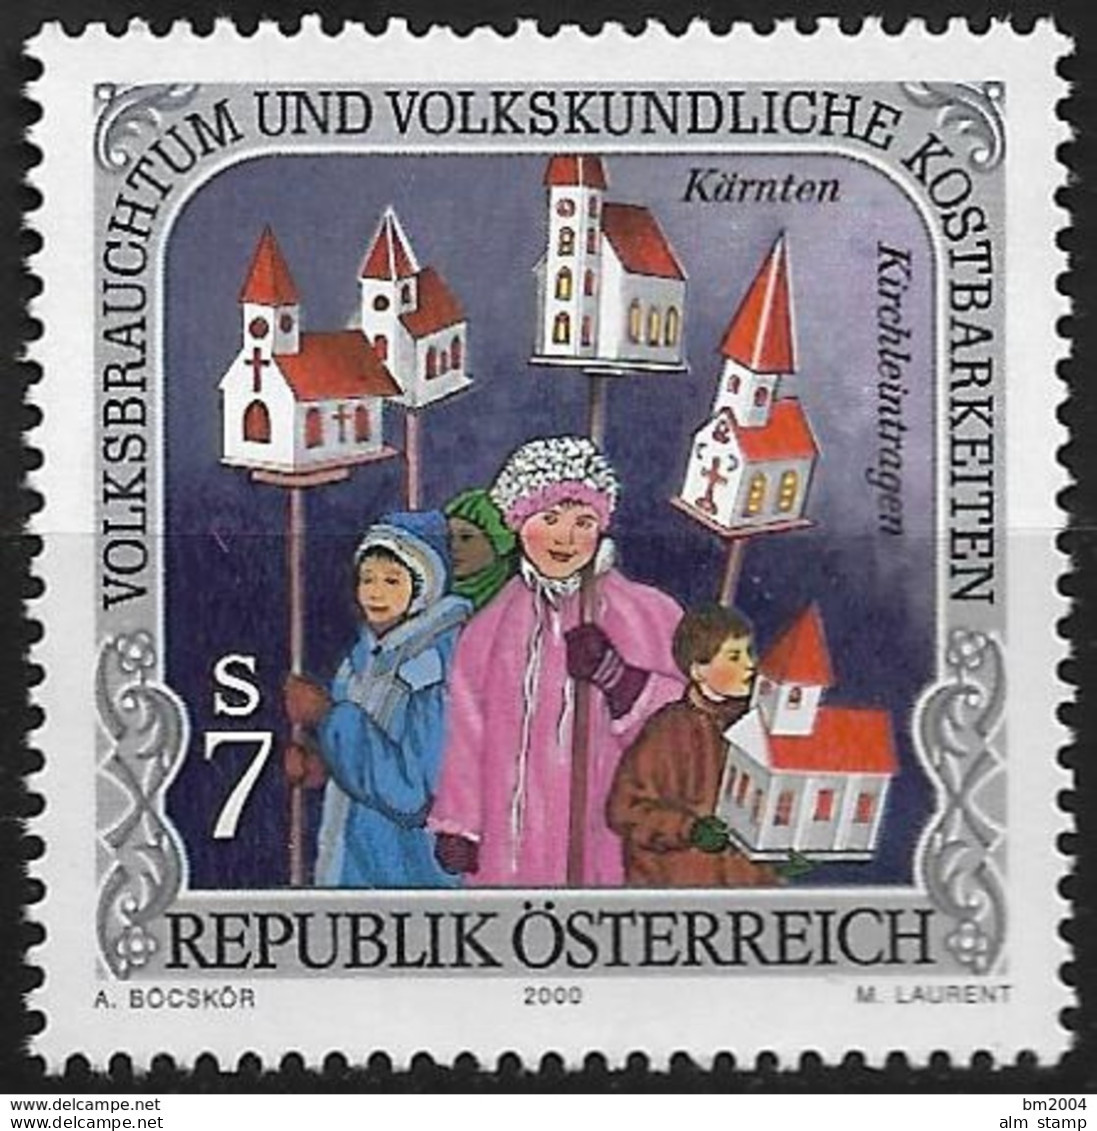 2000 Austria Mi. 2302 **MNH    Volksbrauchtum Und Volkskundliche Kostbarkeiten - Unused Stamps